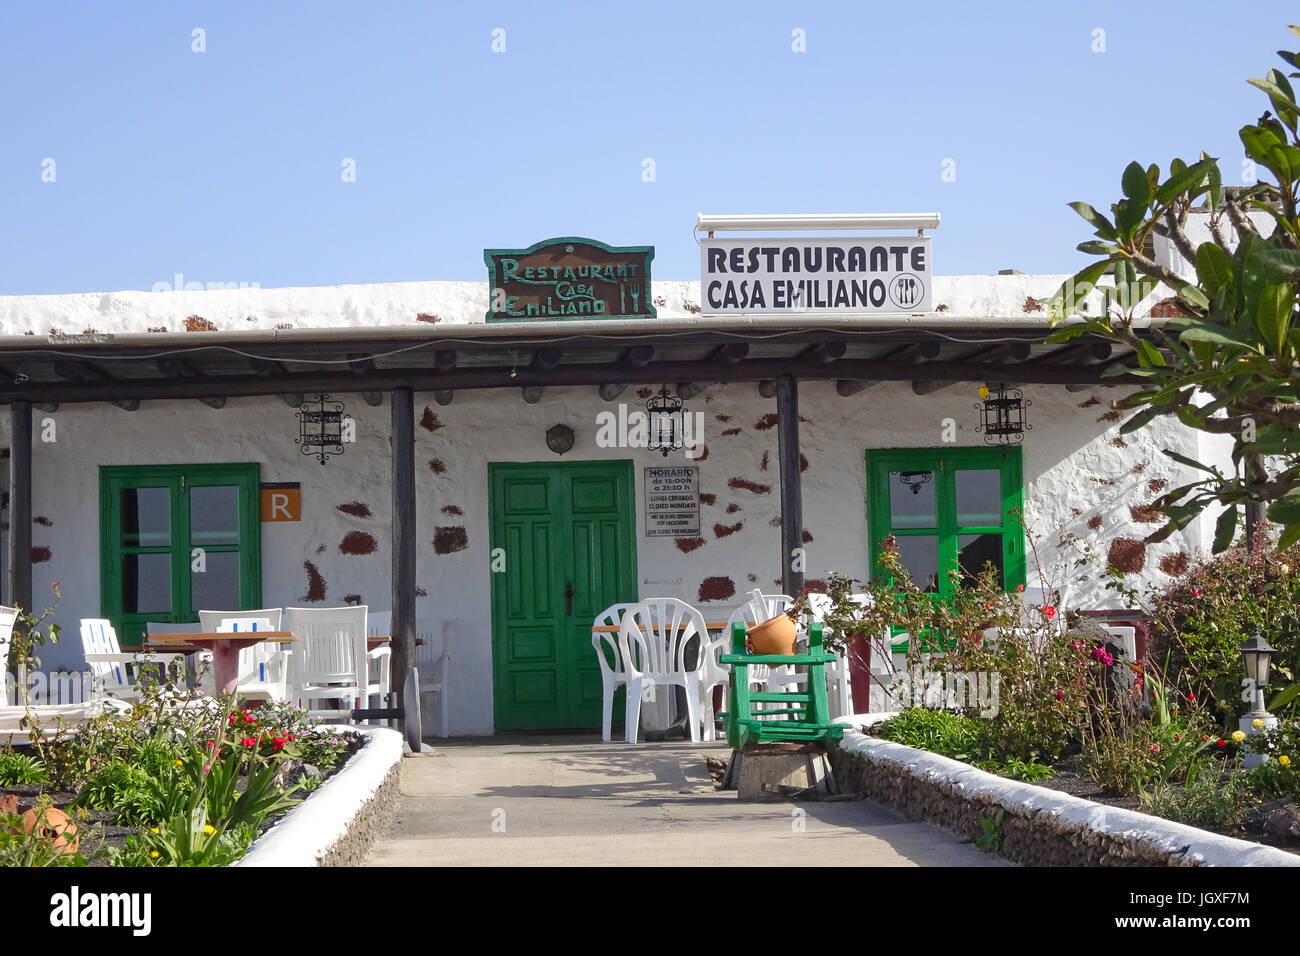 Restaurant Casa Emiliano, typisch kanarisches Haus mit Vorgarten, Femes, Lanzarote, Kanarische Inseln, Europa | Restaurant Casa Emiliano, typical cana Stock Photo